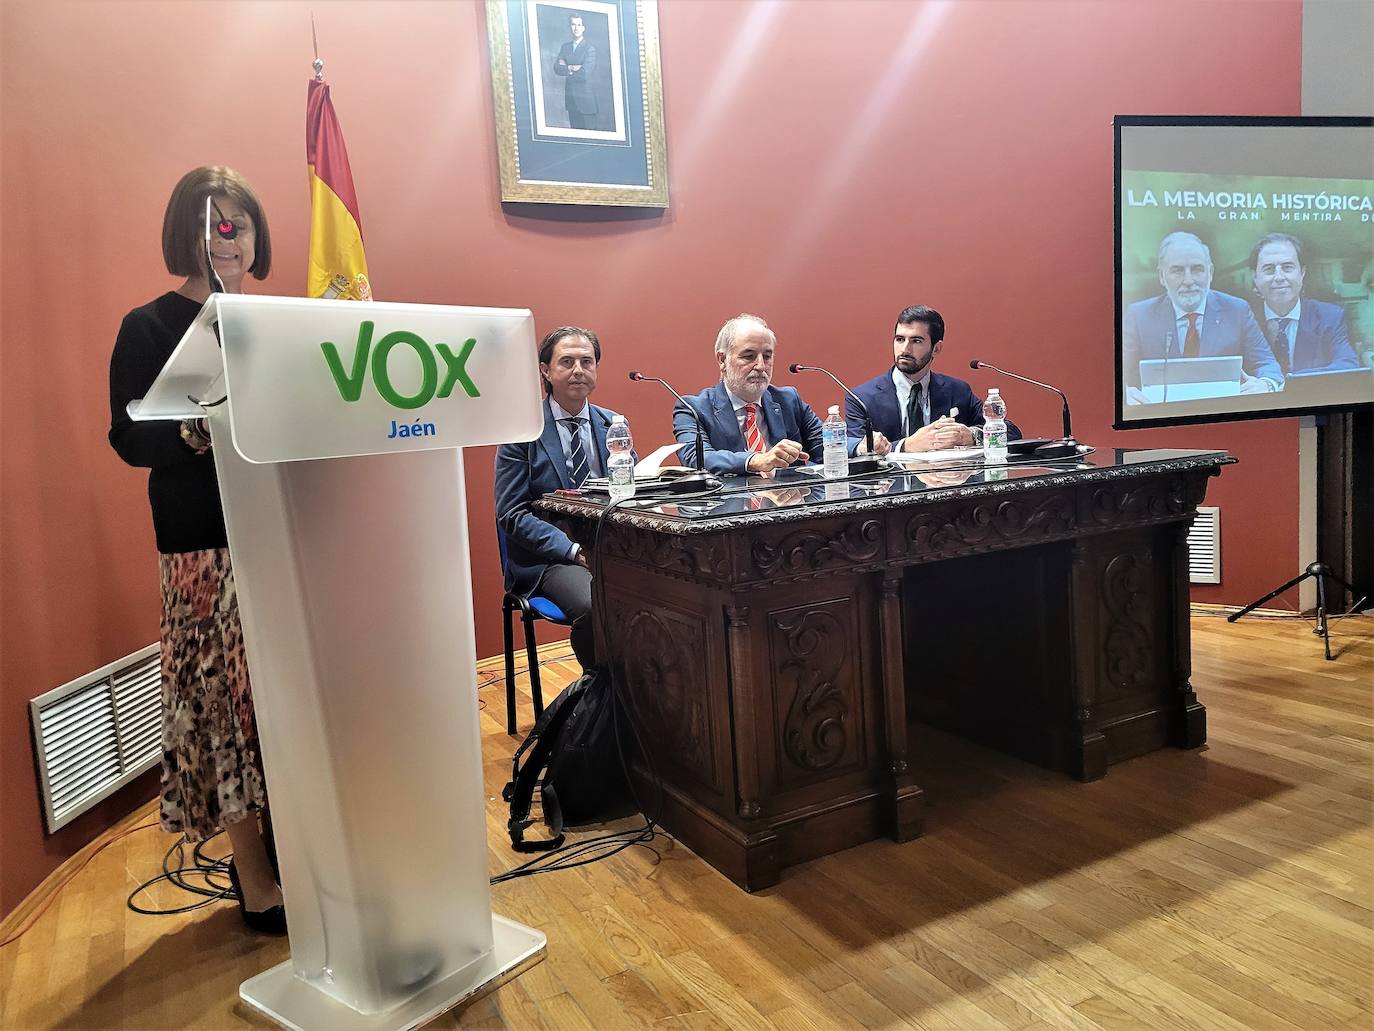 Vox defiende en Andújar la política que fomente la concordia y evite revanchismo